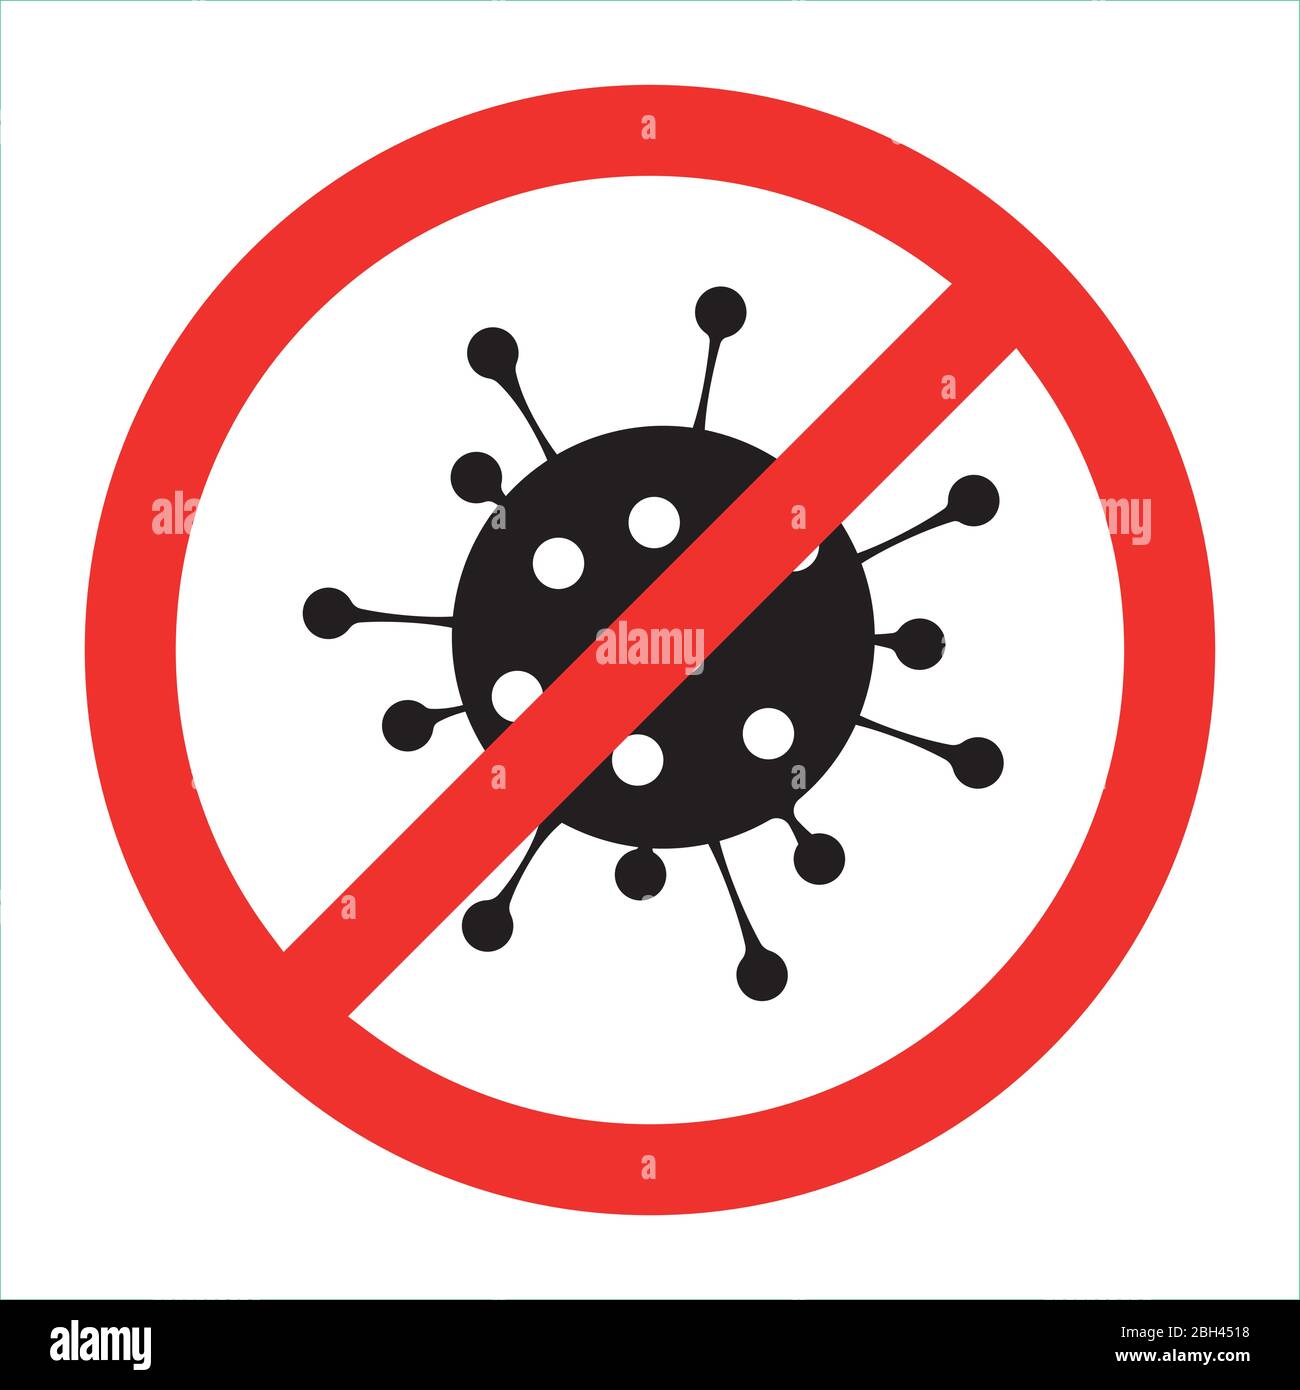 Simbolo rosso proibire il virus corona con vettore icona glifo nero. Interrompere l'infezione con il patogeno Covid-19. Illustrazione Vettoriale